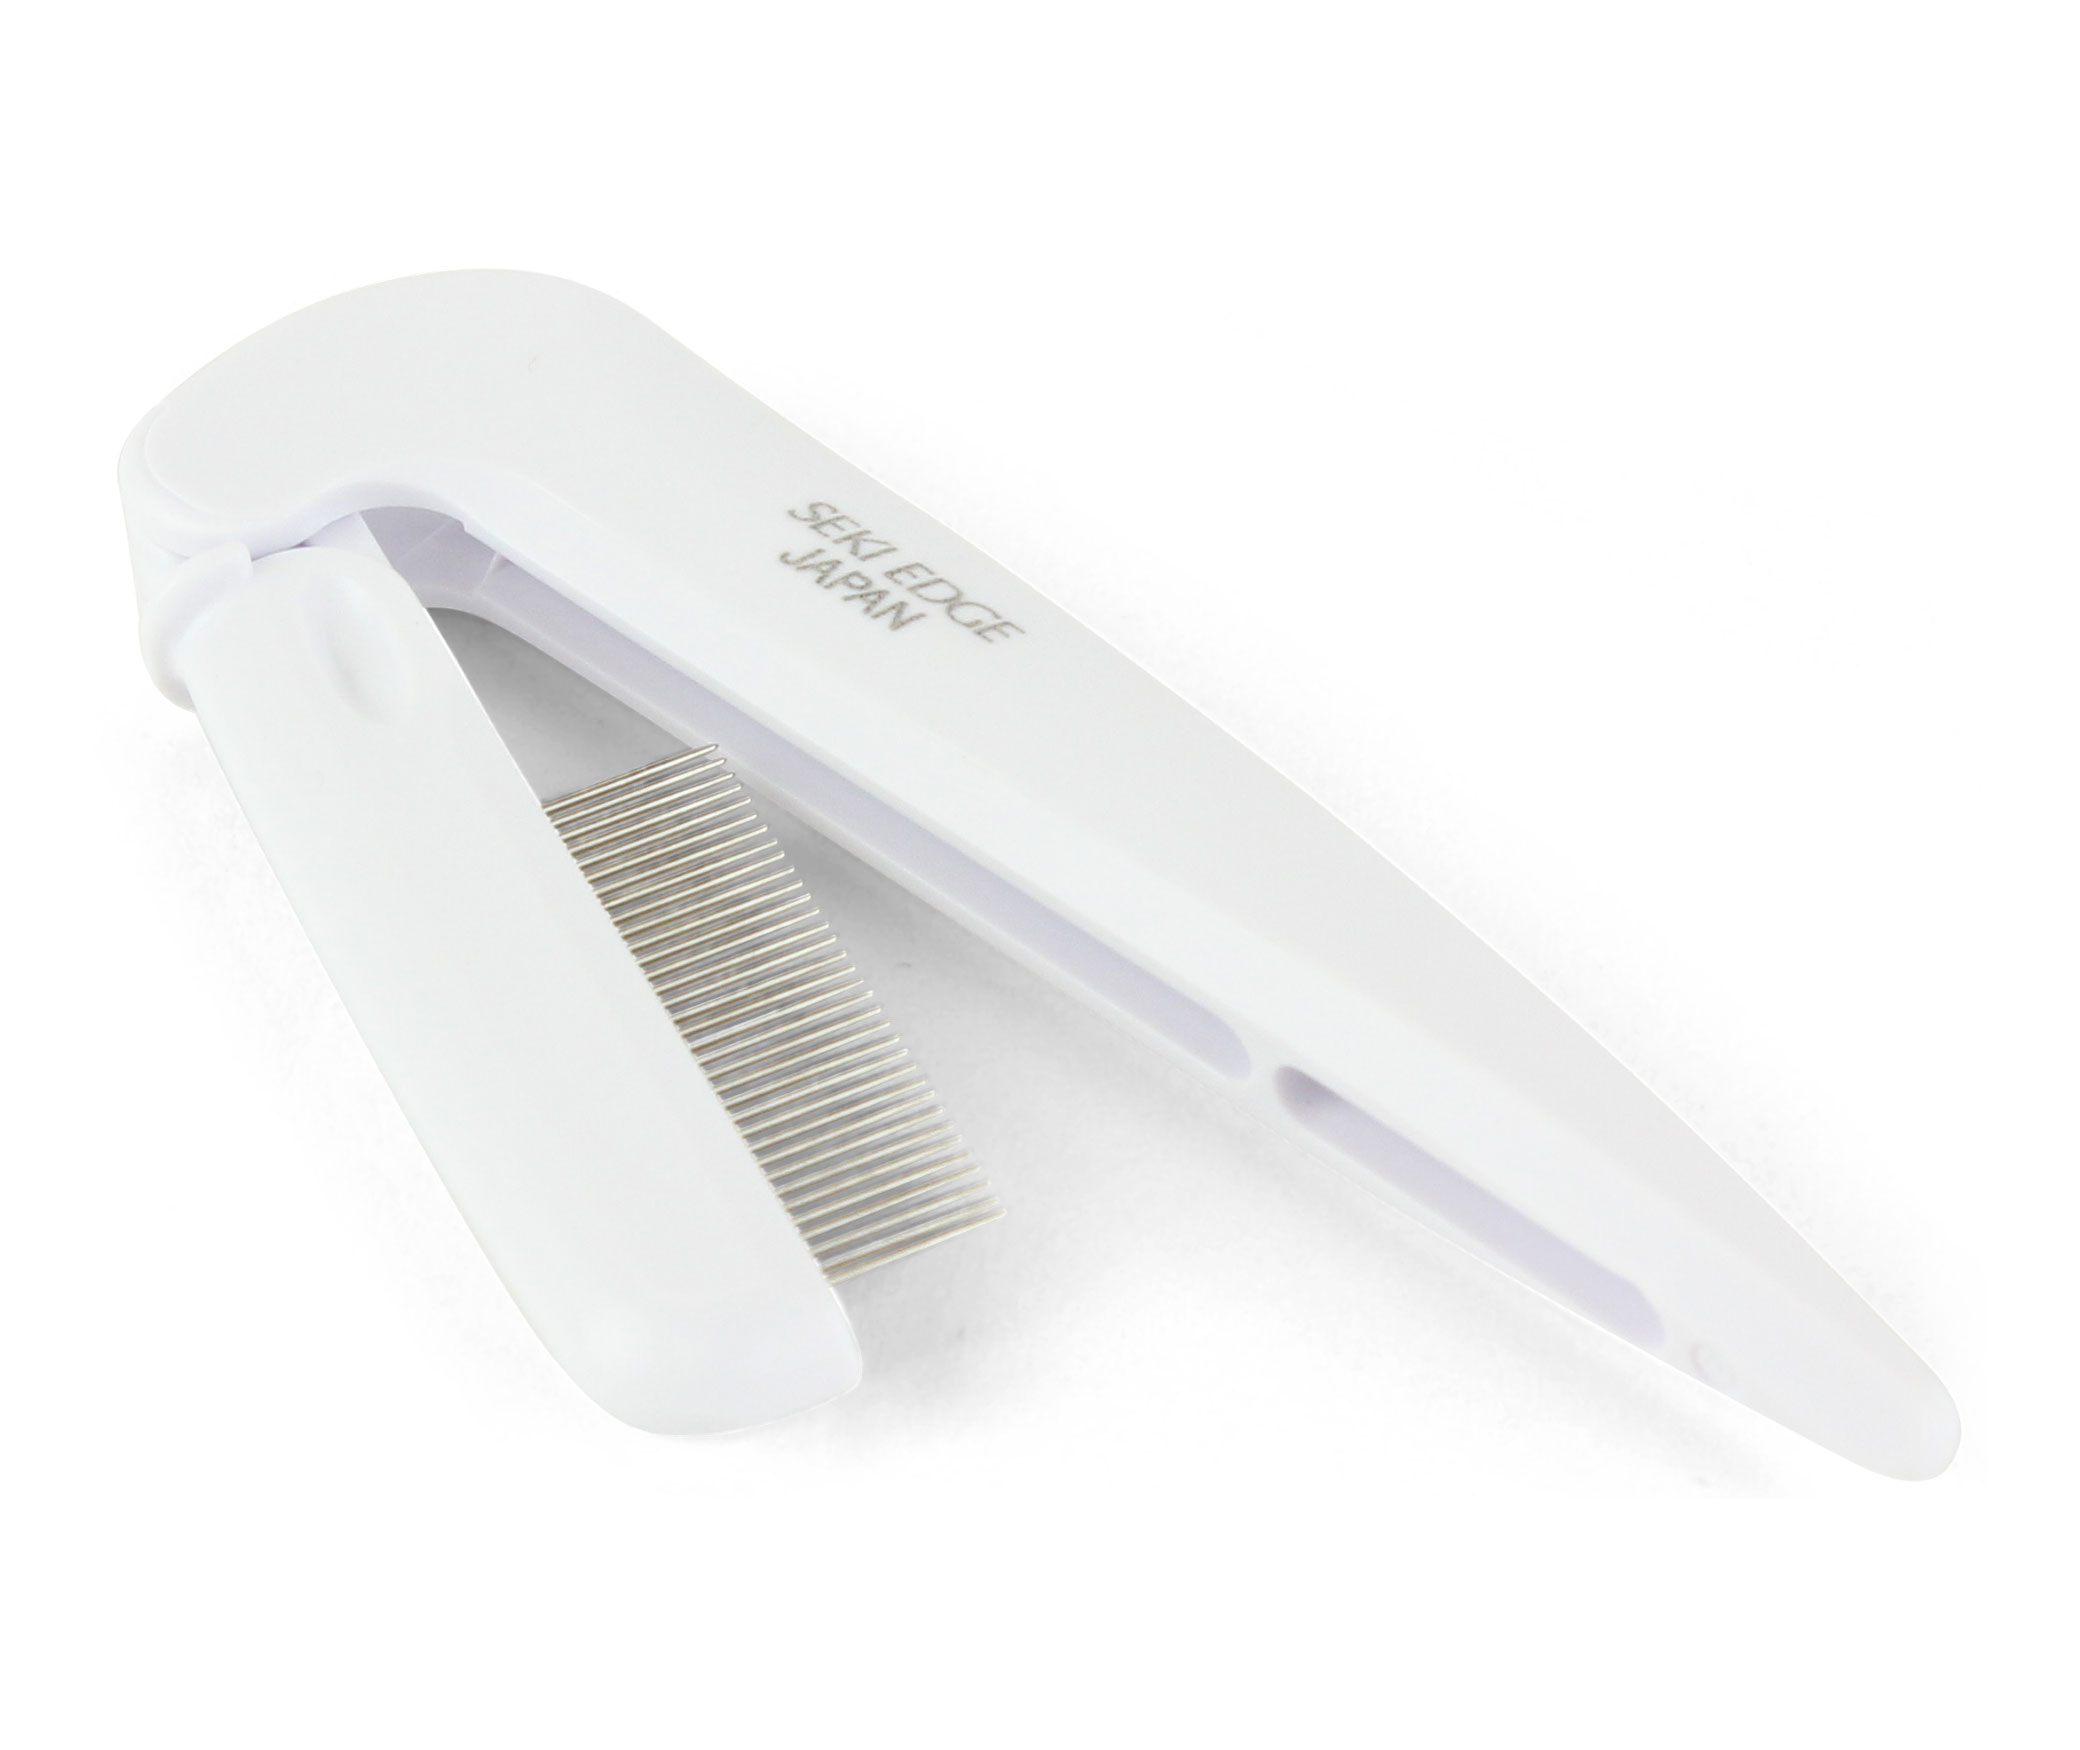 Seki Edge Folding Lash Pin Comb (SS-603) separates eyelashes